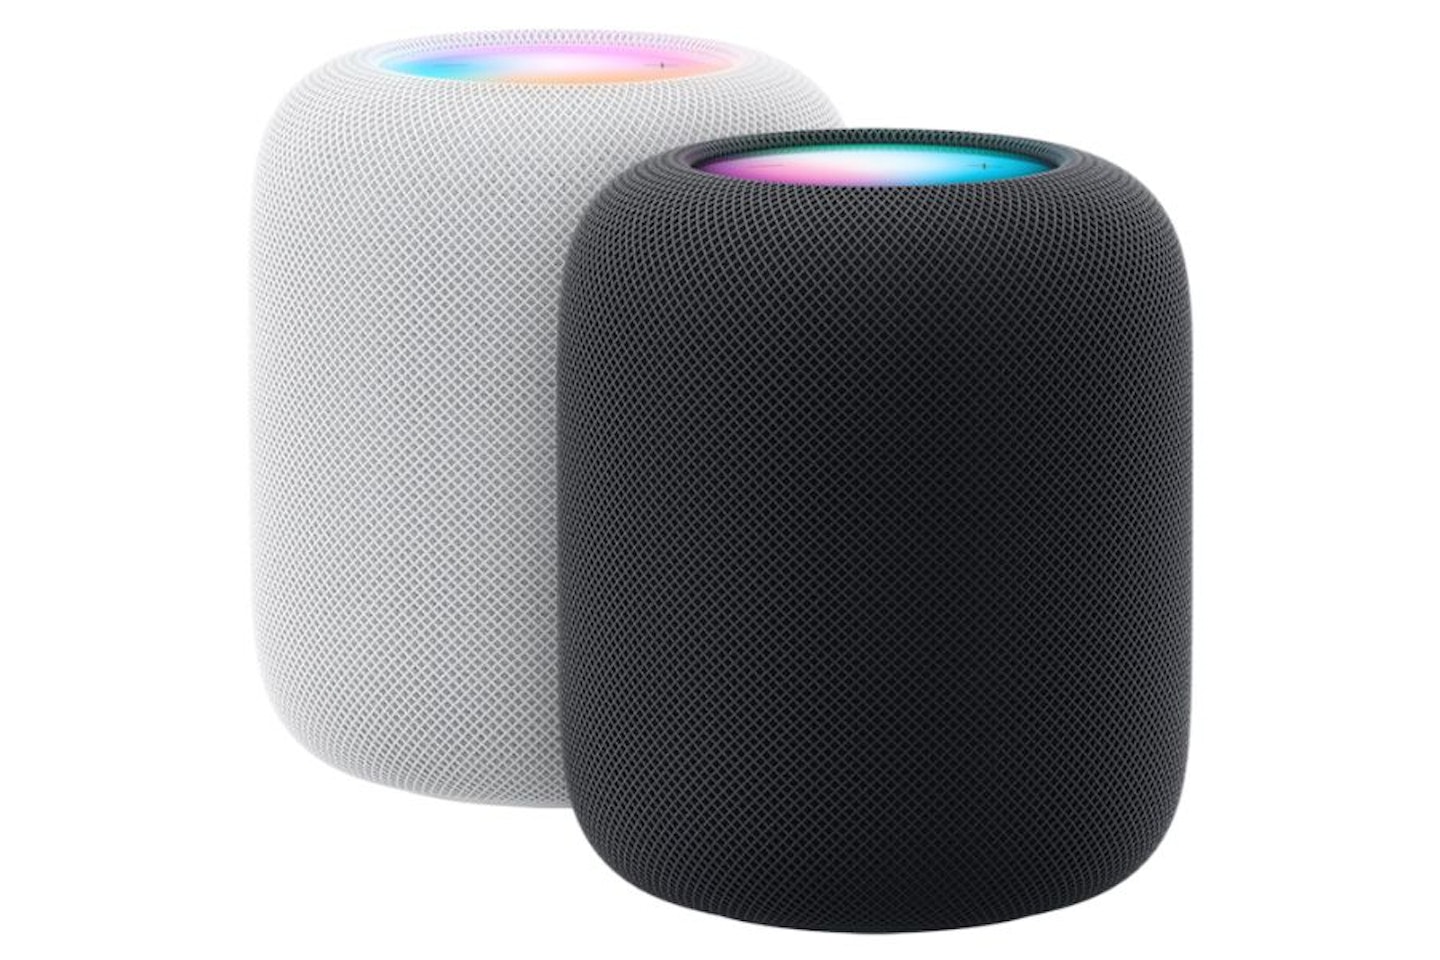 Apple Home Pod Smart Speaker (2nd Gen)